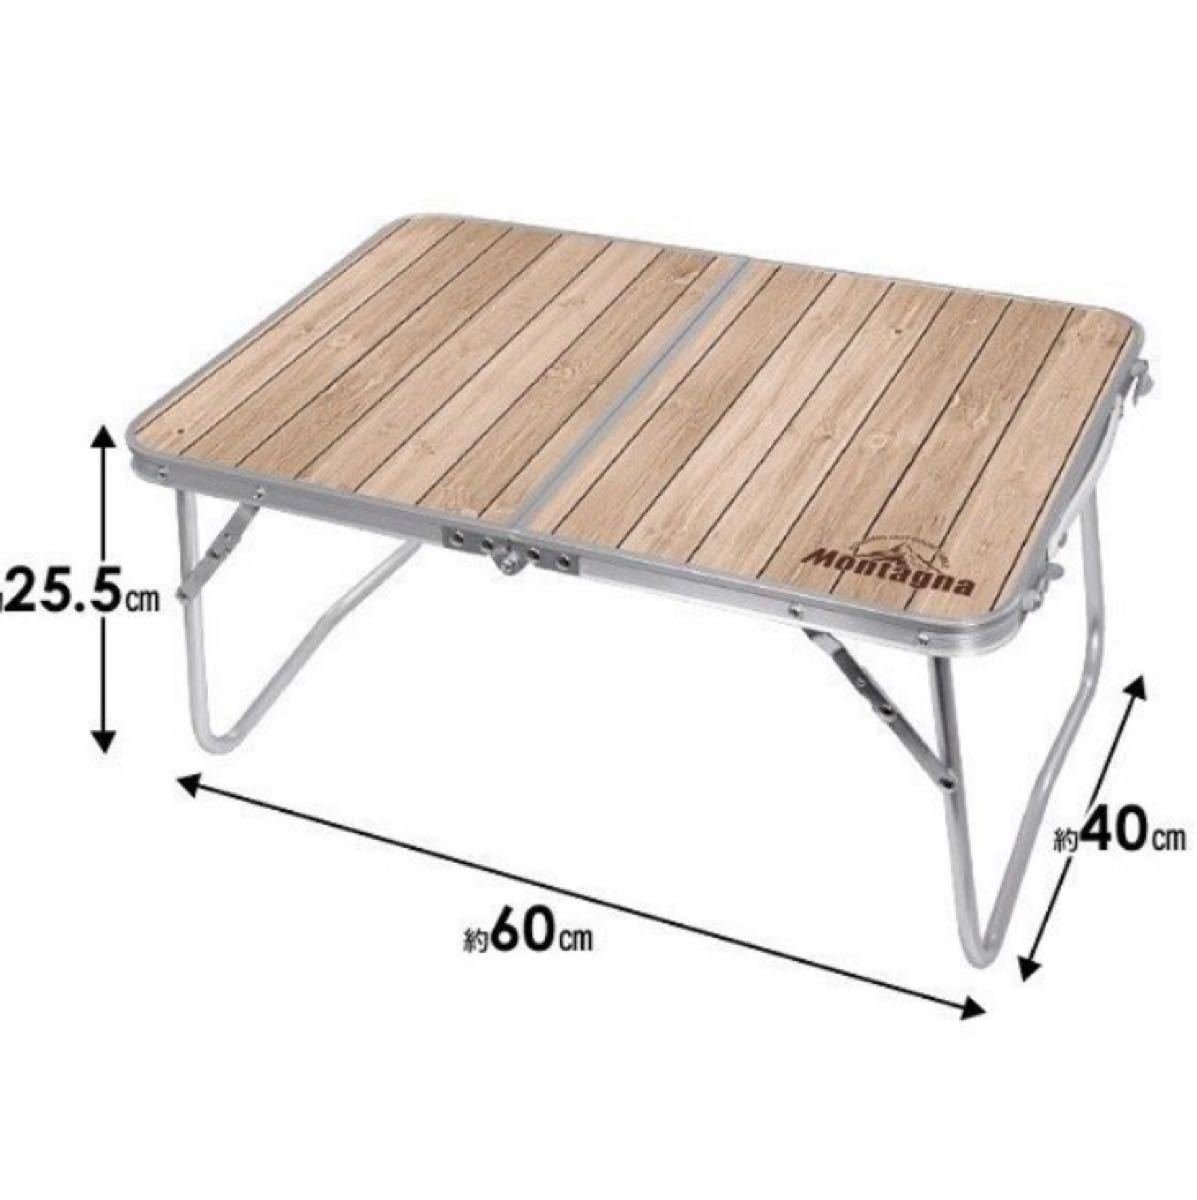 アウトドア テーブル 折りたたみ アルミ ローテーブル 60cm 軽量コンパクト　 キャンプテーブル　BBQ 公園レジャーテーブル